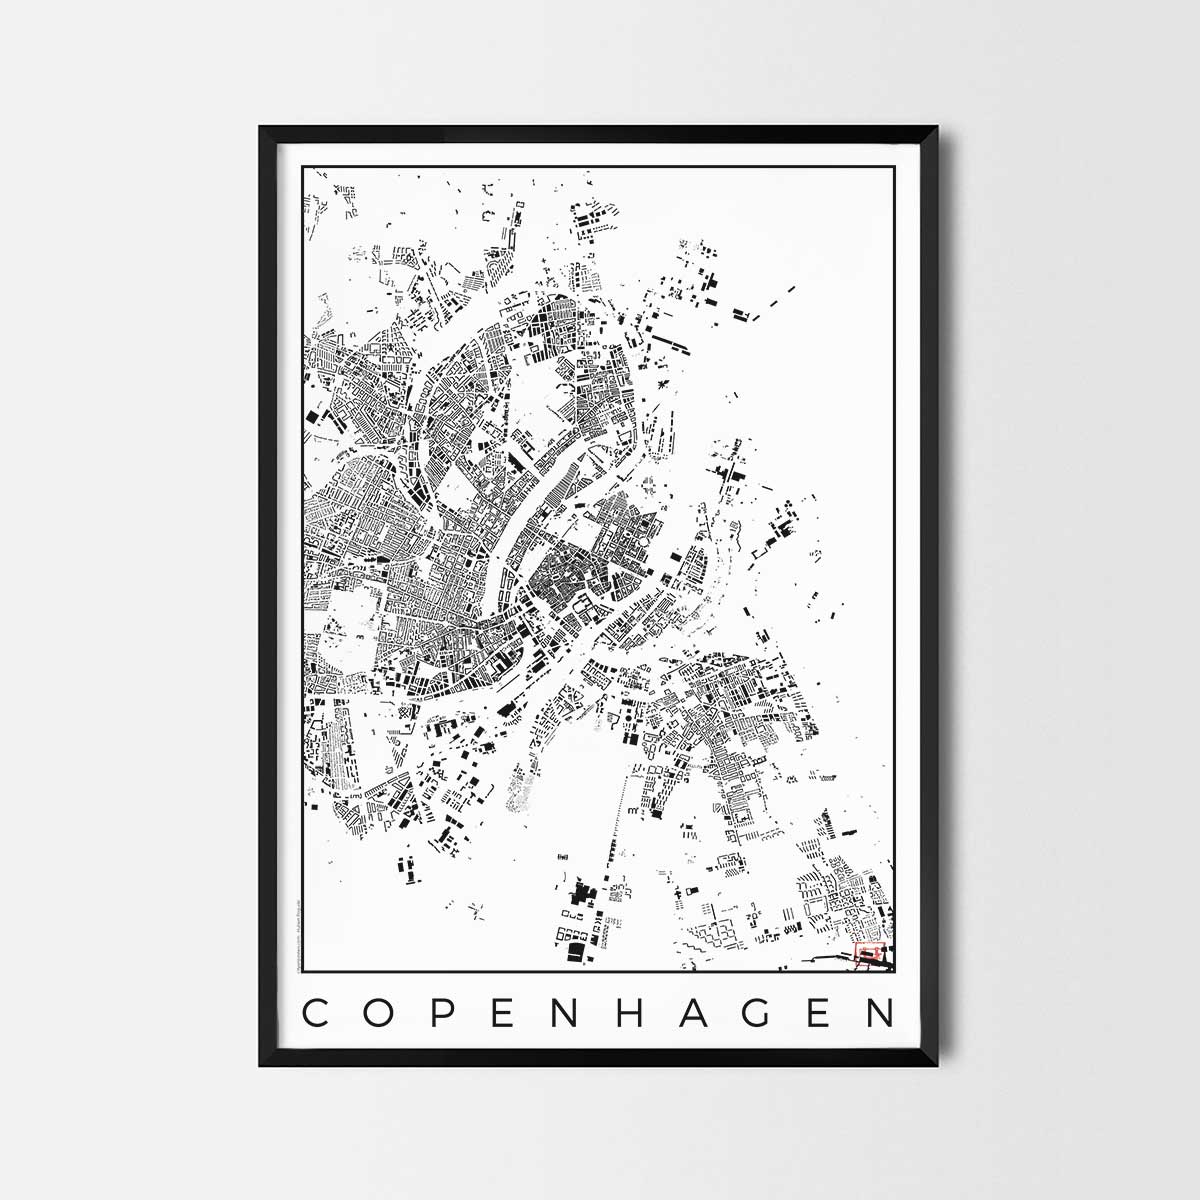 Copenhagen Map Poster schwarzplan Urban plan city map art posters map posters city art prints city posters